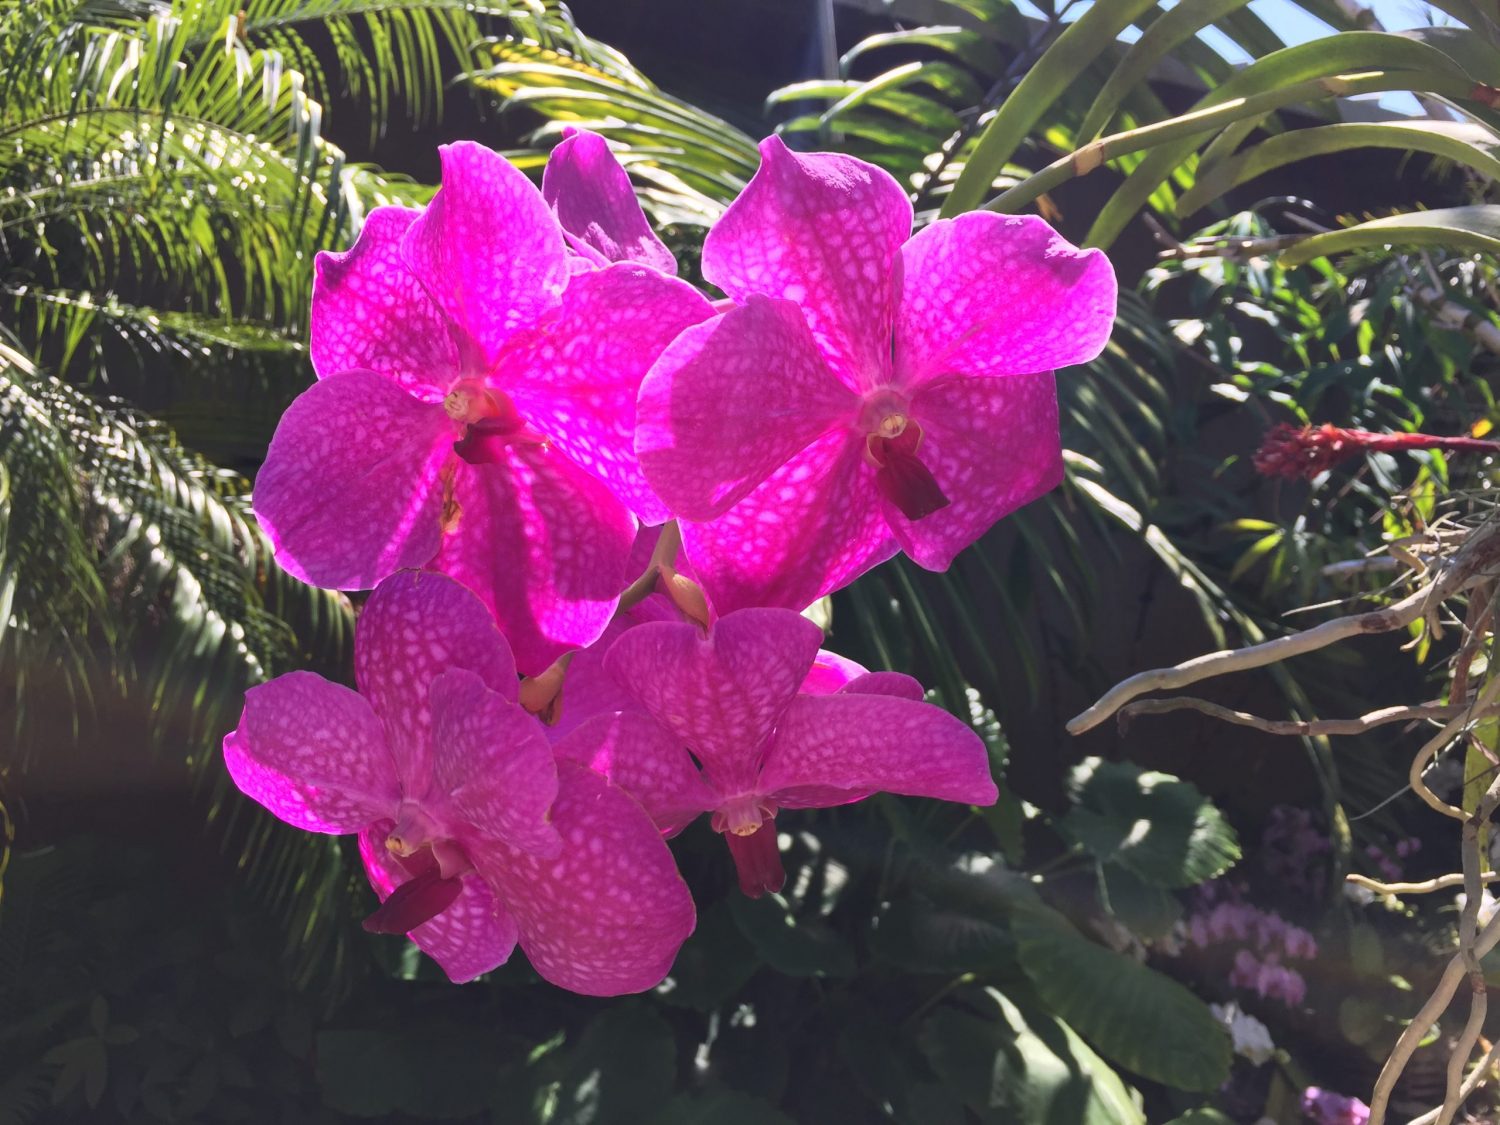 Orchidées (crédit photo Phrenssynnes)